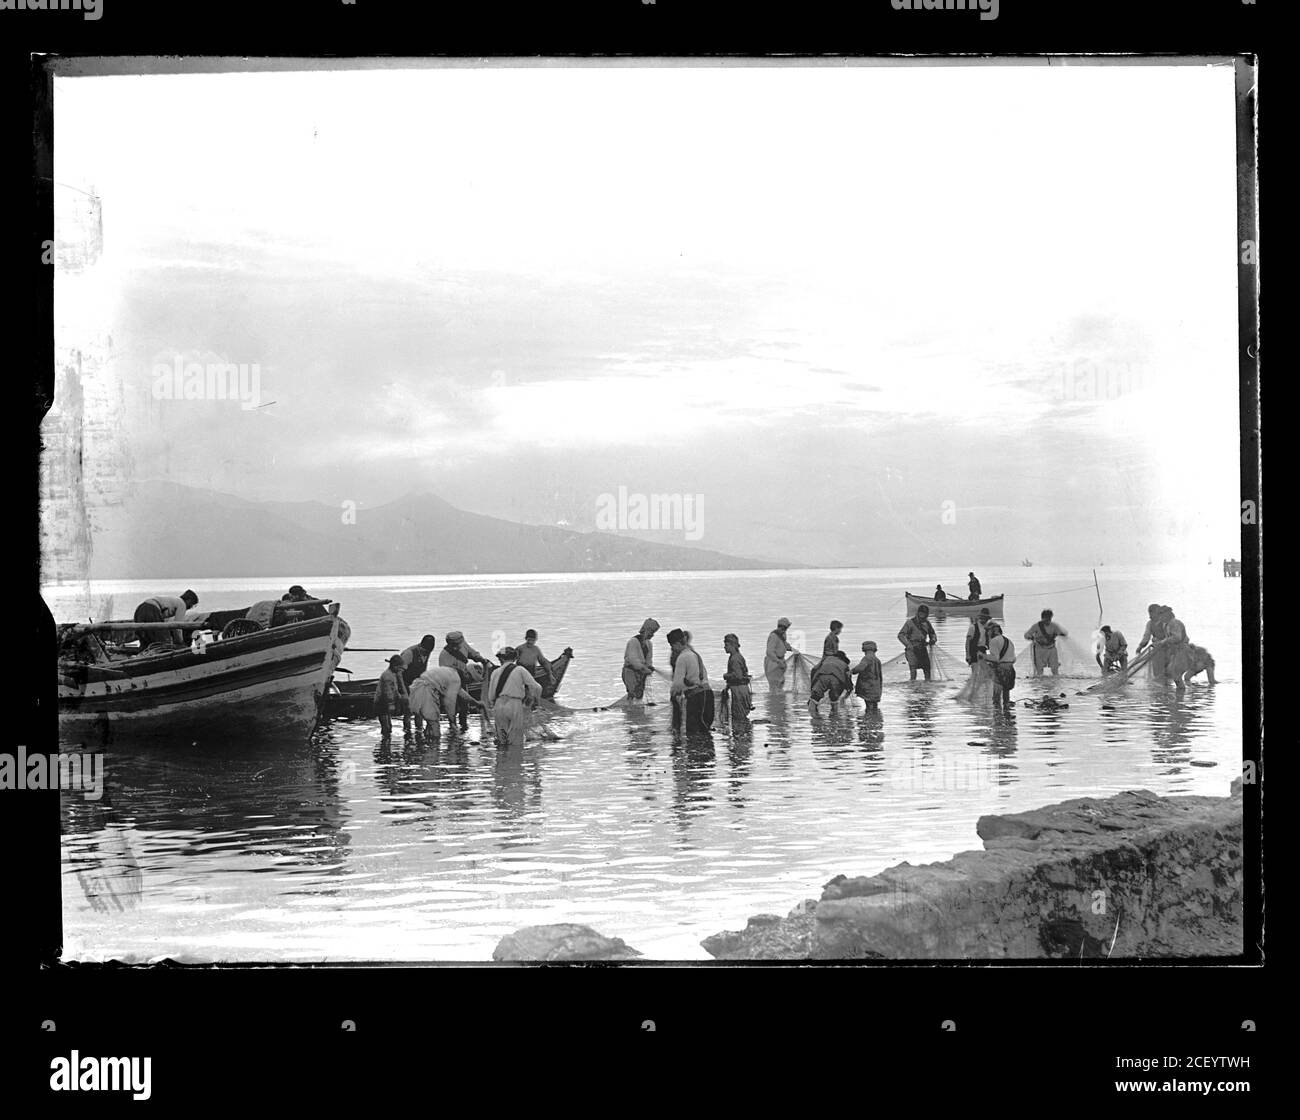 Türkische Fischer bereiten ihre Ausrüstung und Fischernetz für die nächste Fischerei. Türkei, vermutlich in der Nähe von Izmir (Smyrna). Fotografie auf trockenem Glasplatte aus der Sammlung Herry W. Schaefer, um 1913. Stockfoto